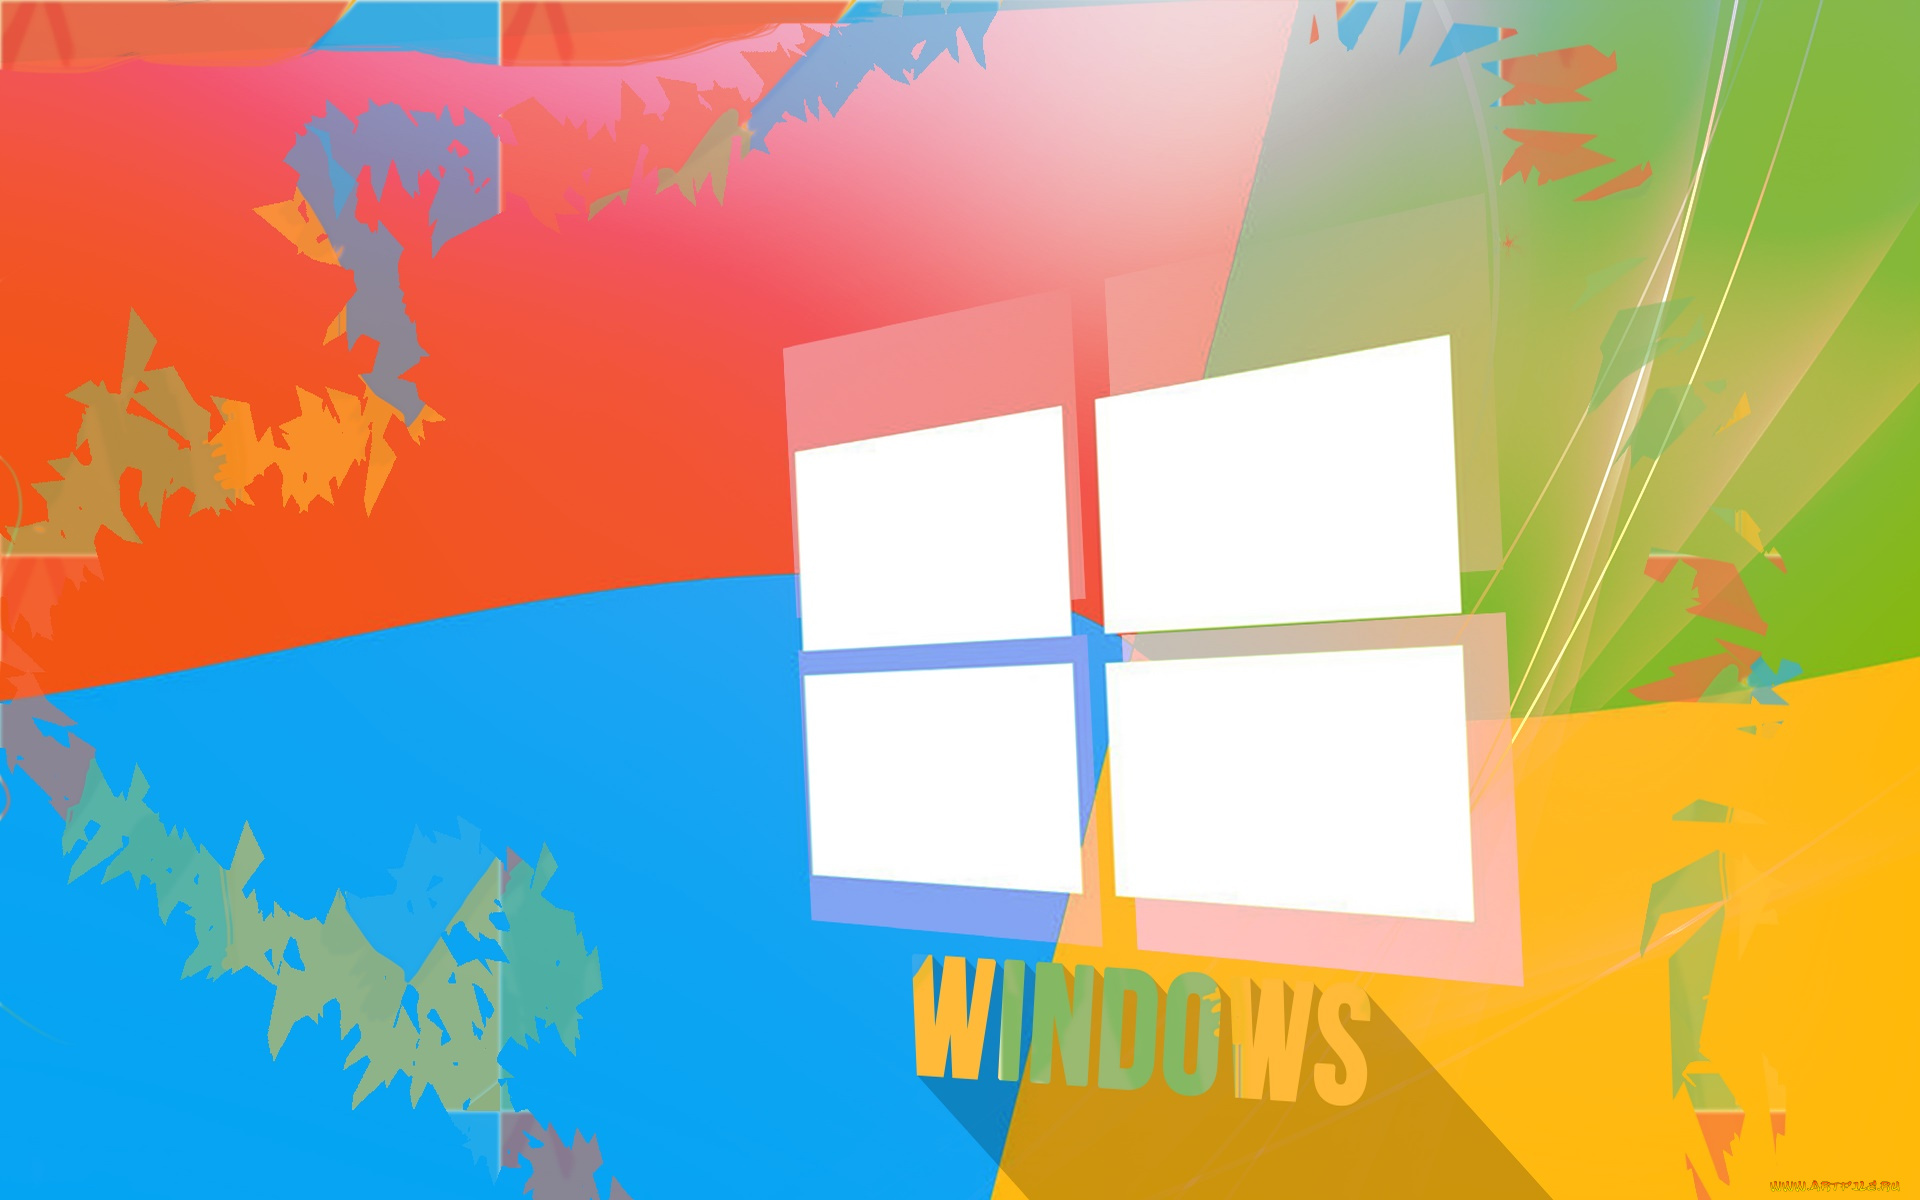 компьютеры, windows, 9, логотип, фон